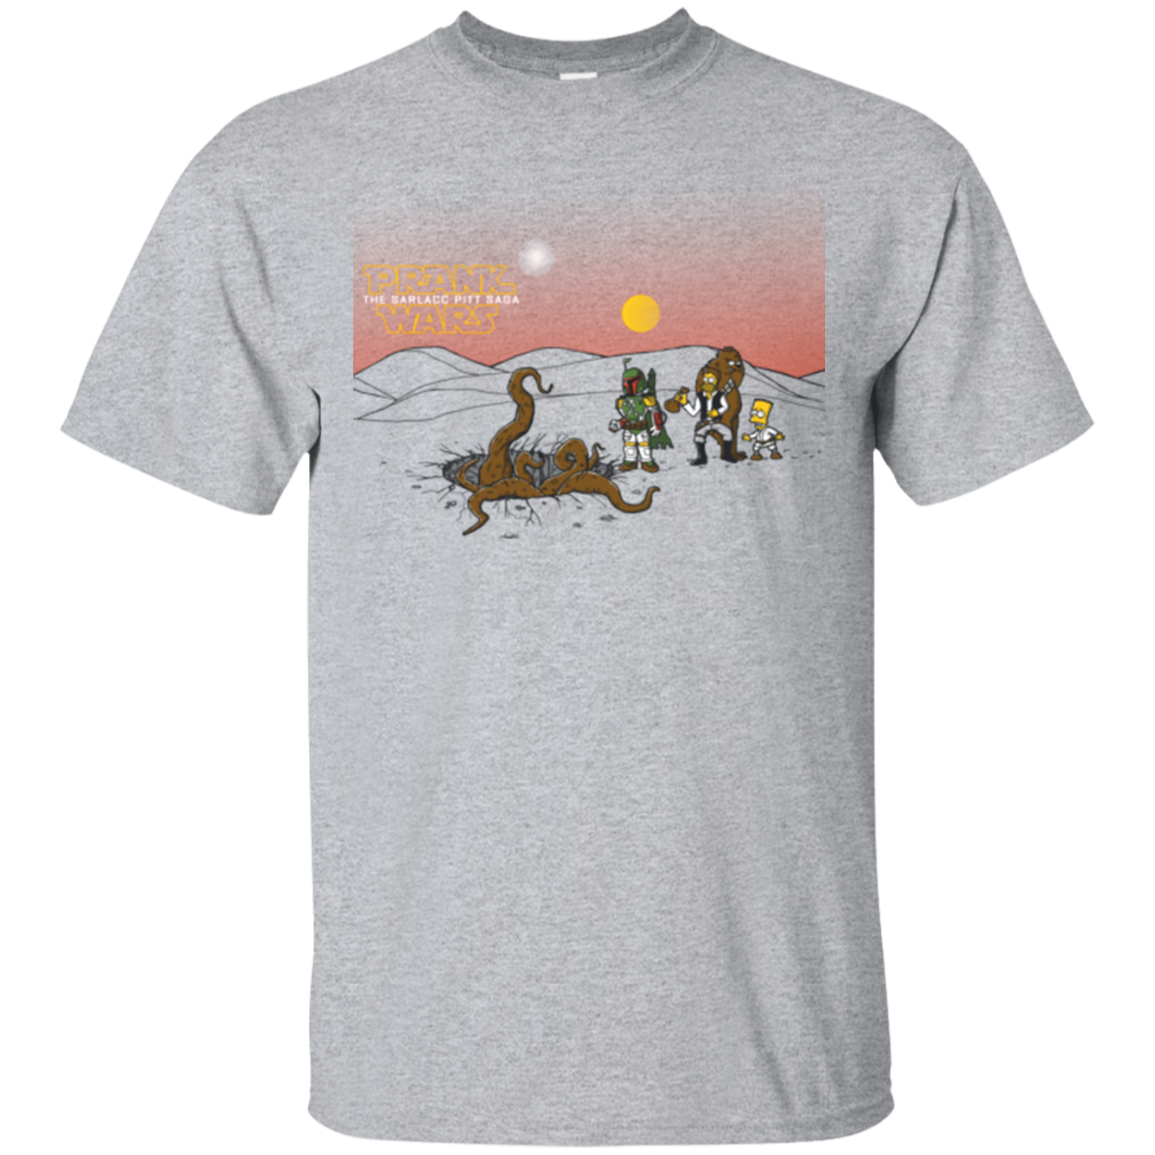 Prank Wars T-Shirt